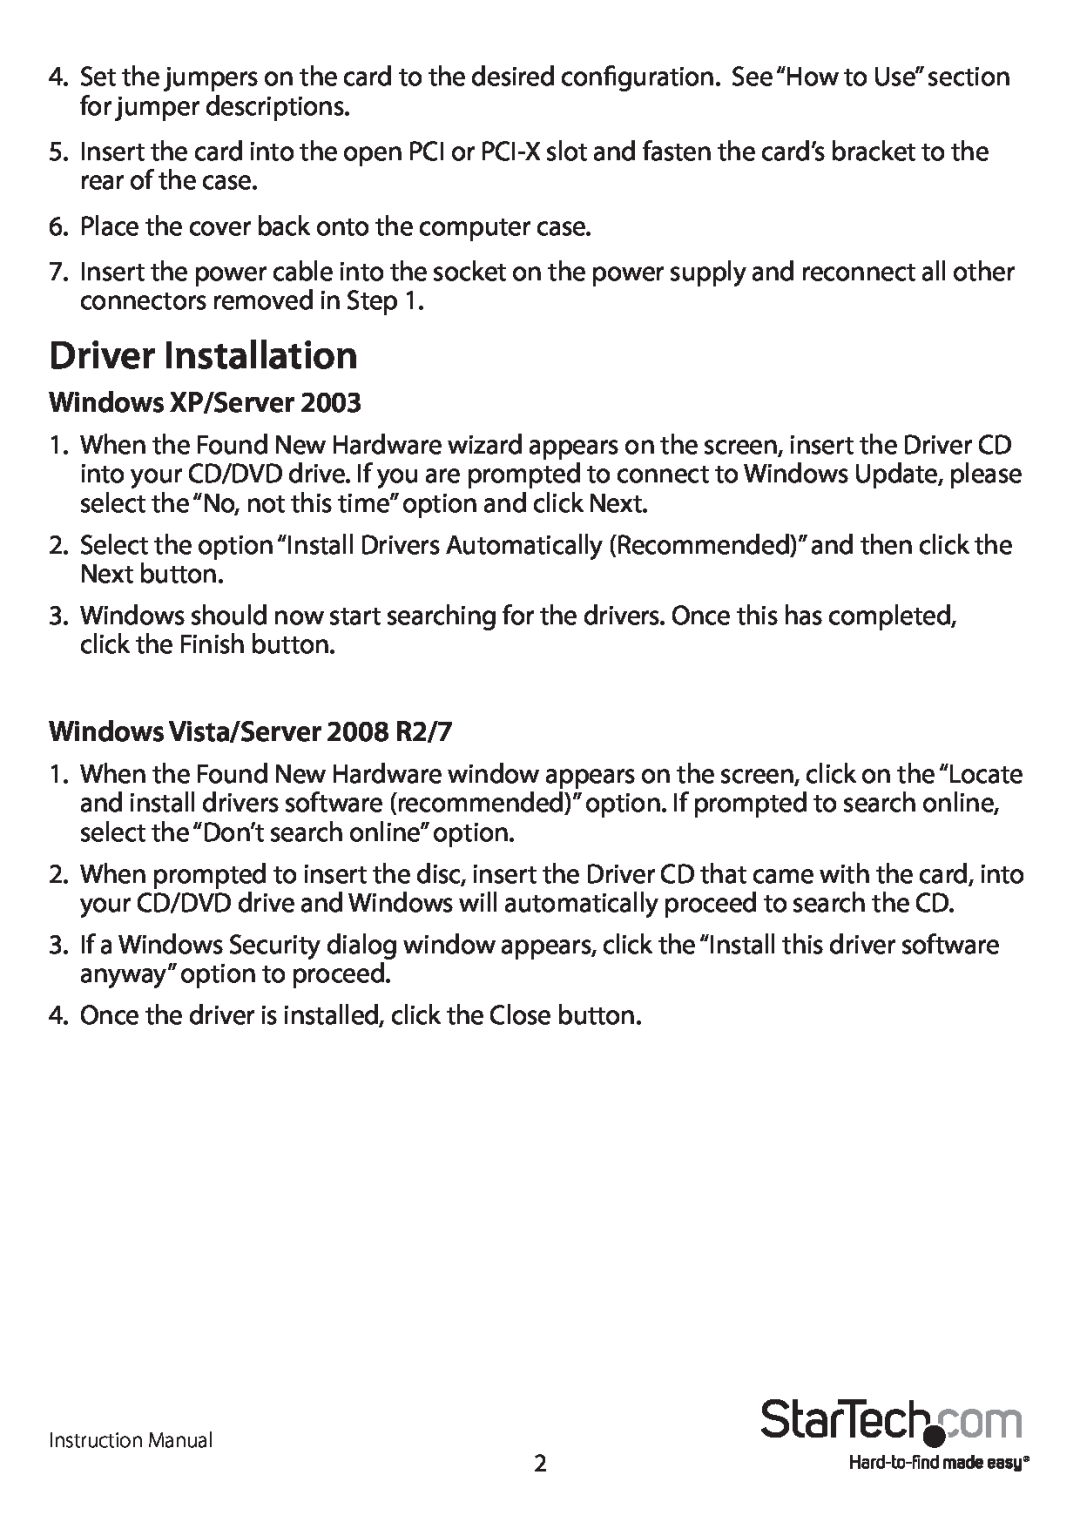 StarTech.com PCI2S232485I manual Driver Installation, Windows XP/Server, Windows Vista/Server 2008 R2/7 